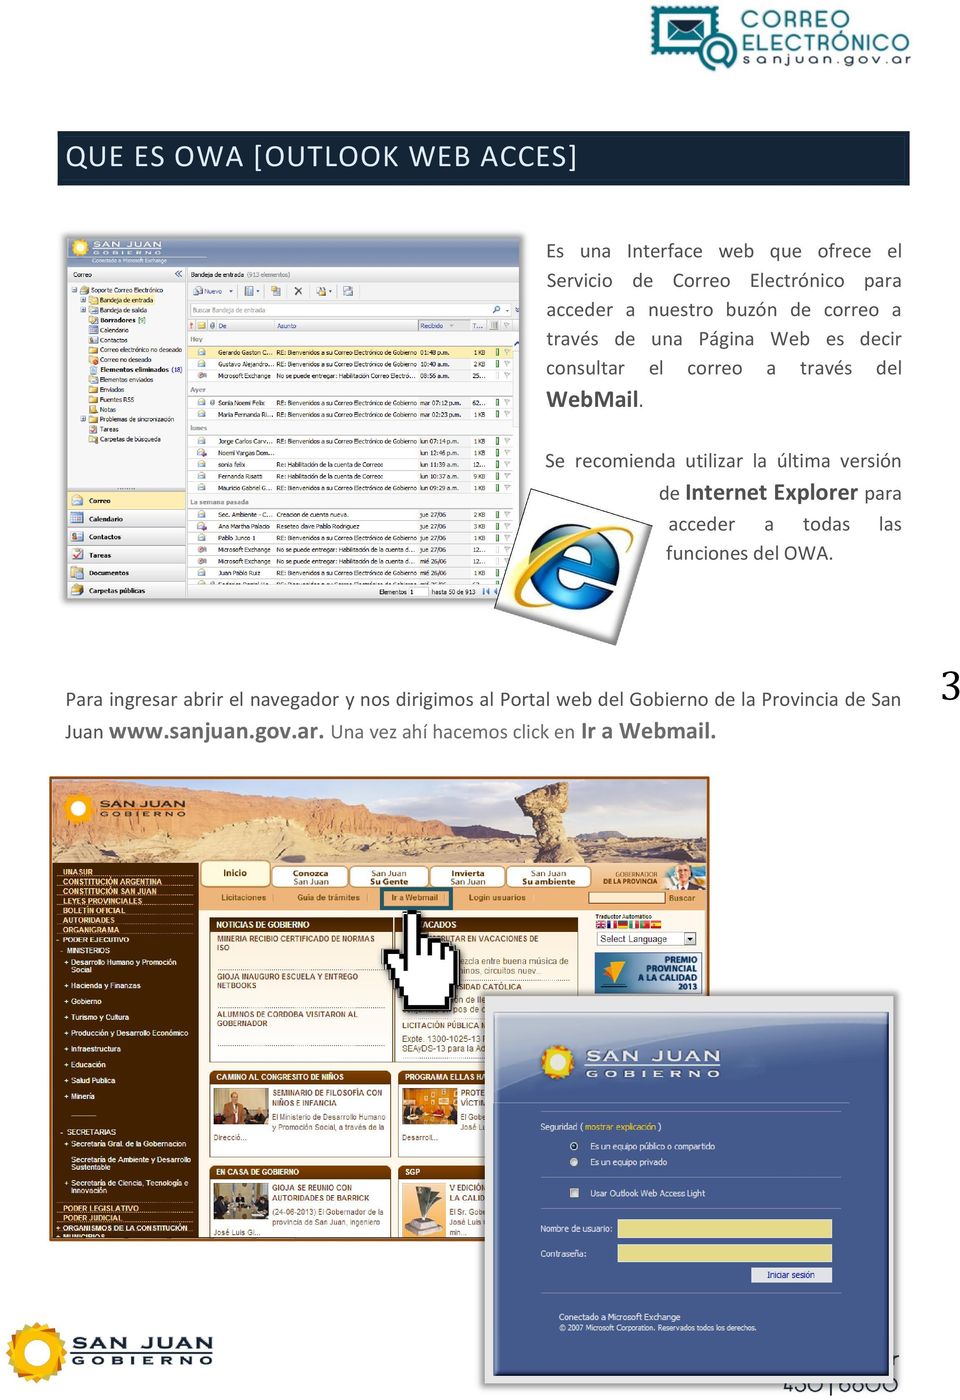 Se recomienda utilizar la última versión de Internet Explorer para acceder a todas las funciones del OWA.